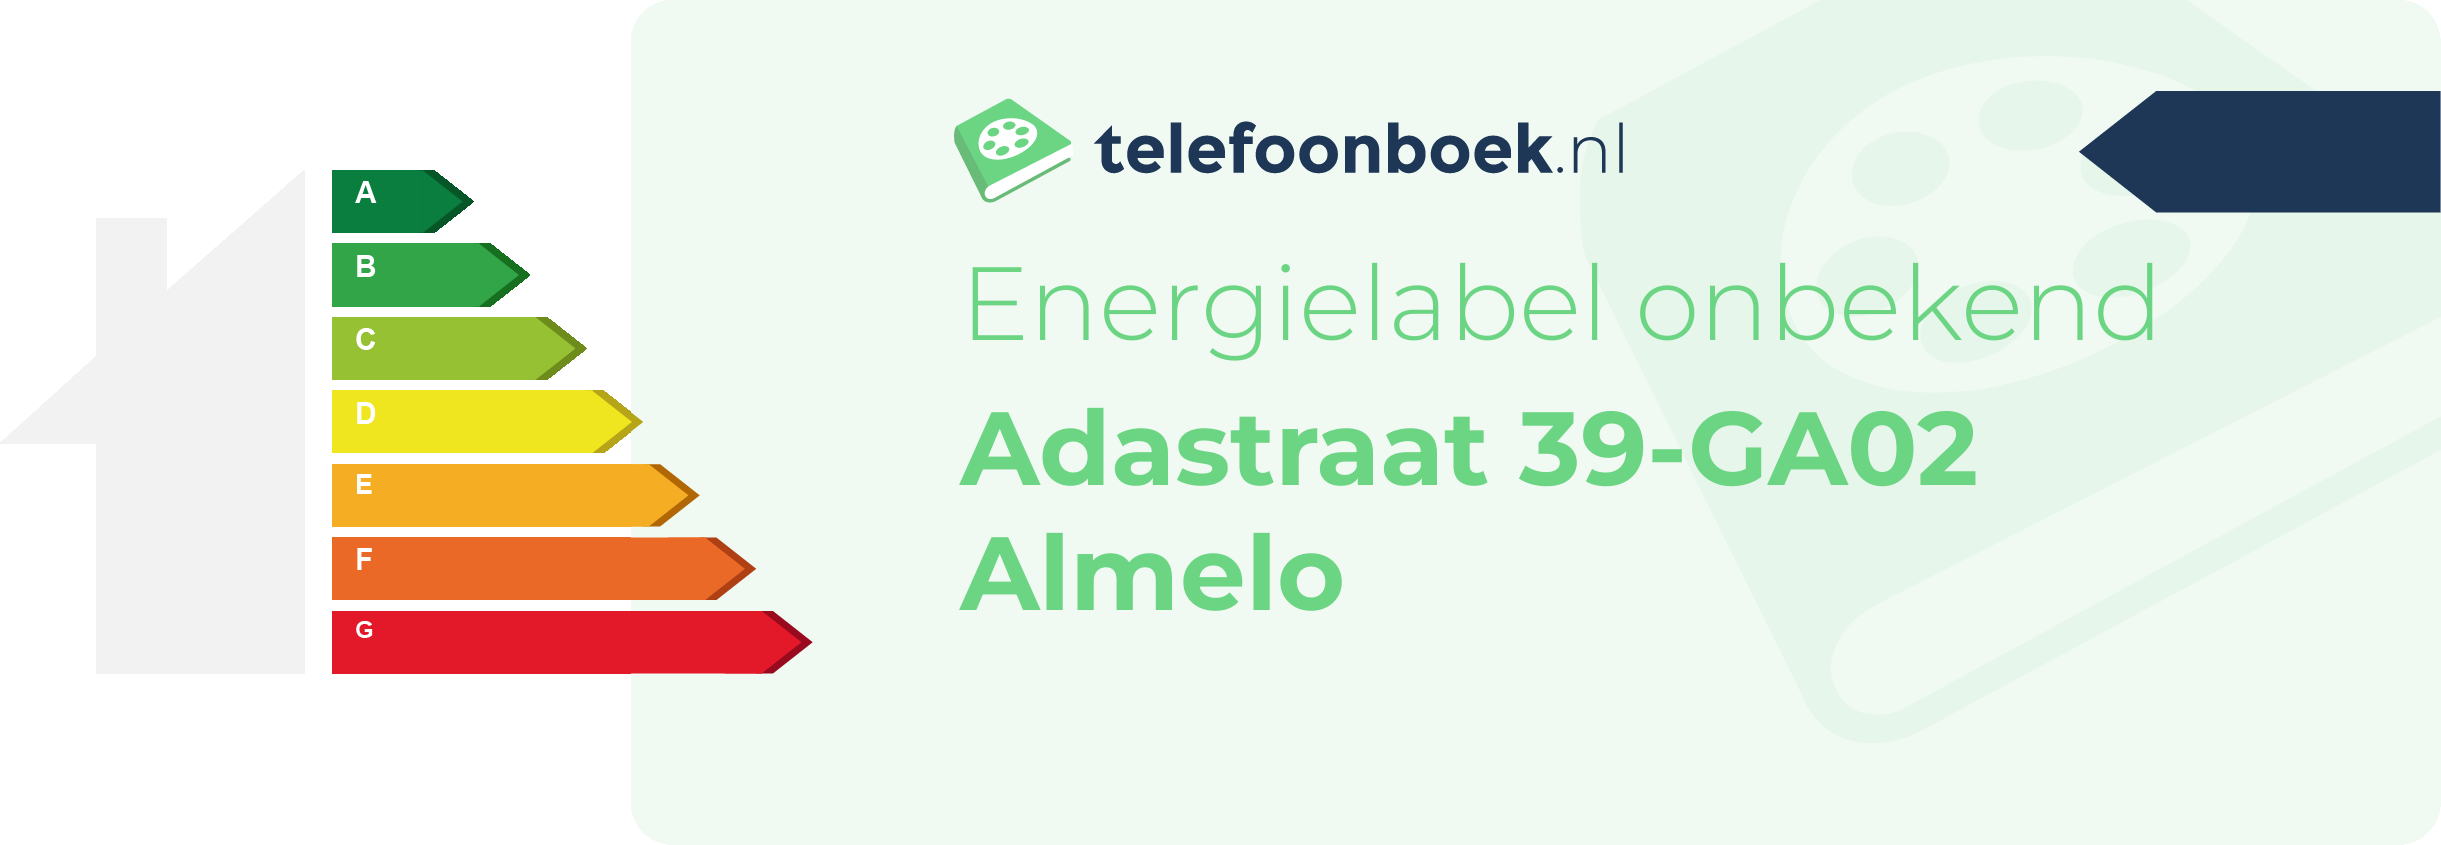 Energielabel Adastraat 39-GA02 Almelo